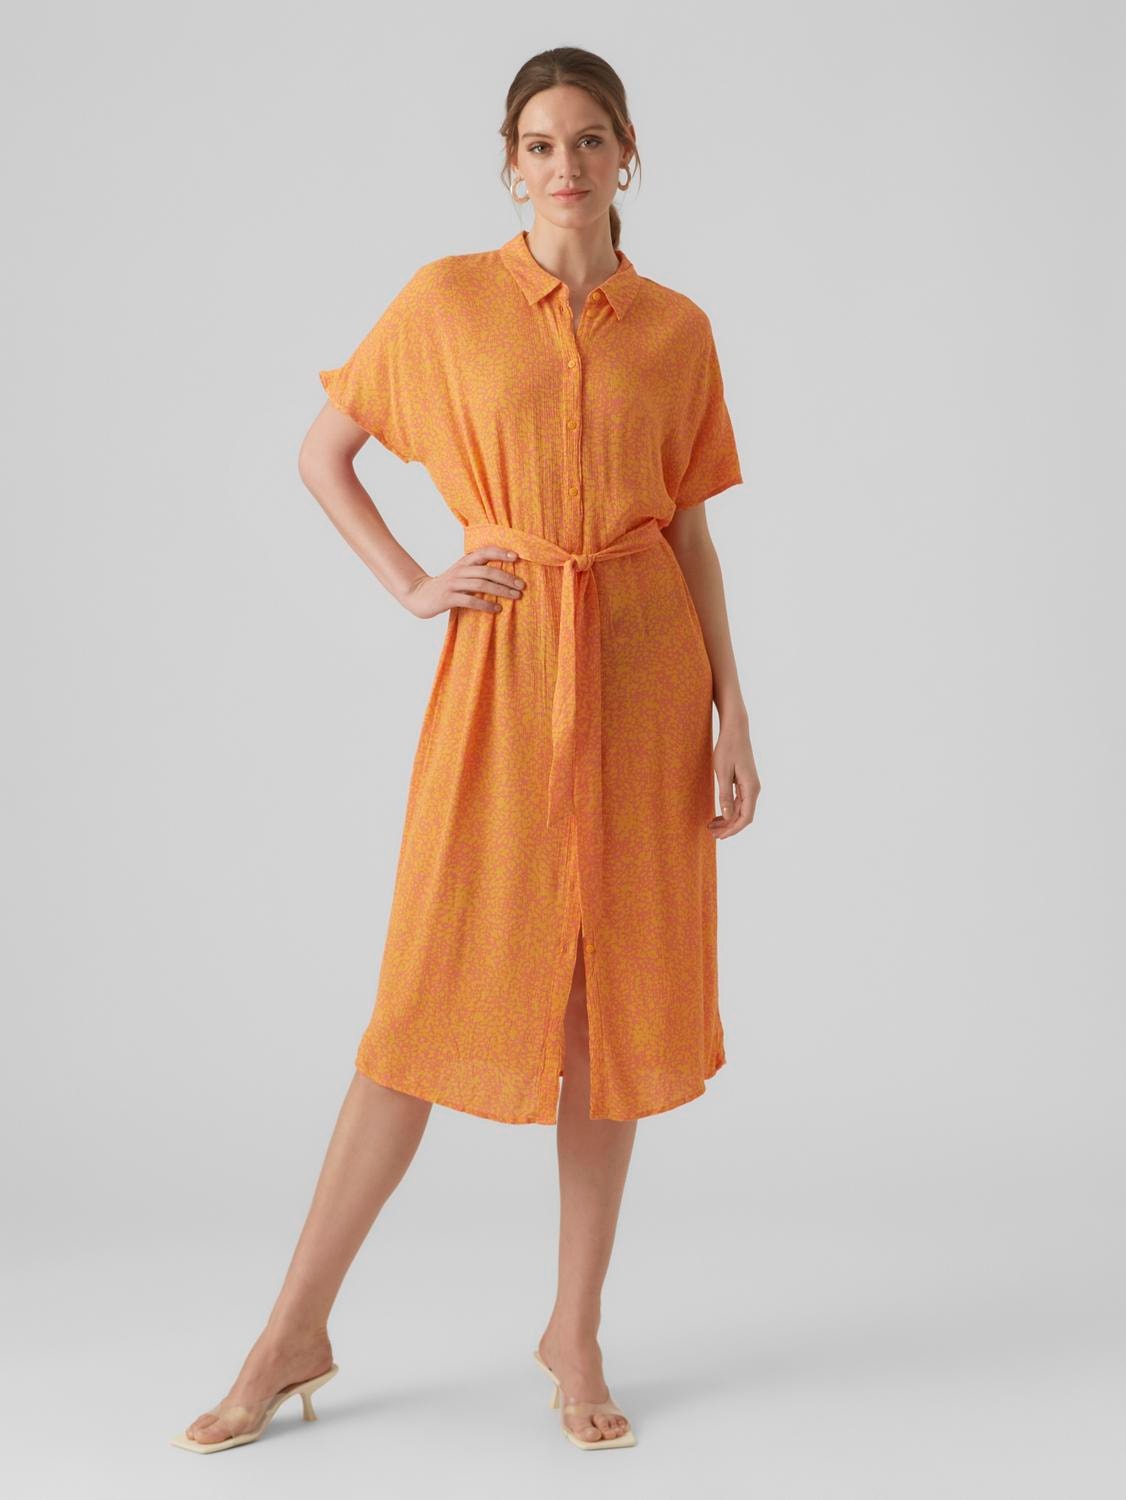 Dapperheid deelnemen Trek lange jurk with 30% discount! | Vero Moda®